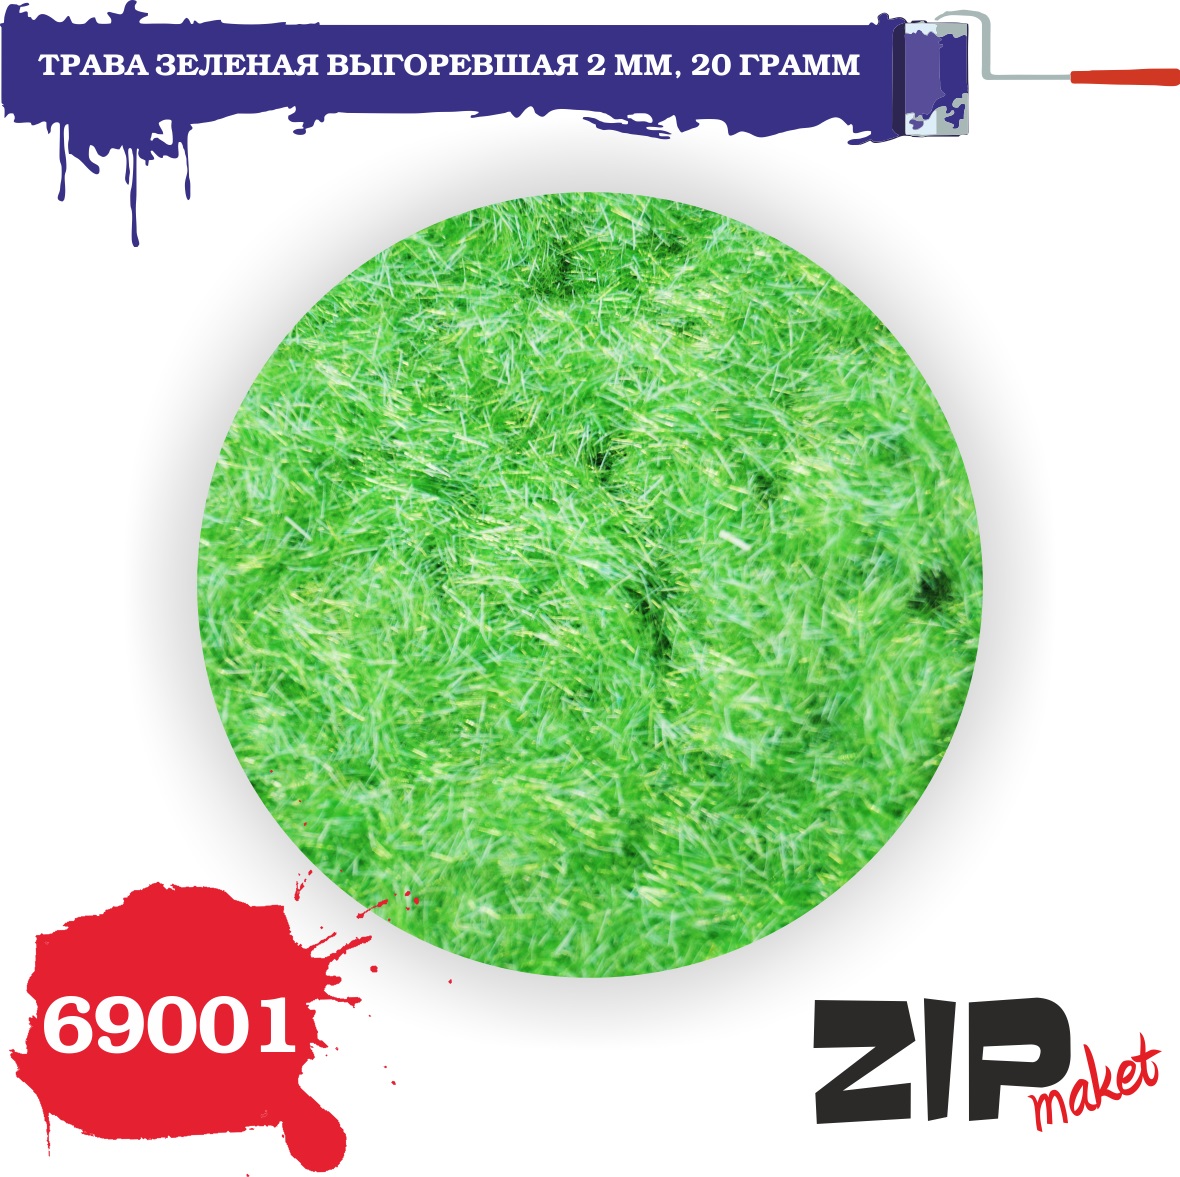 69001  материалы для диорам  Трава зеленая выгоревшая 2 мм, 20гр